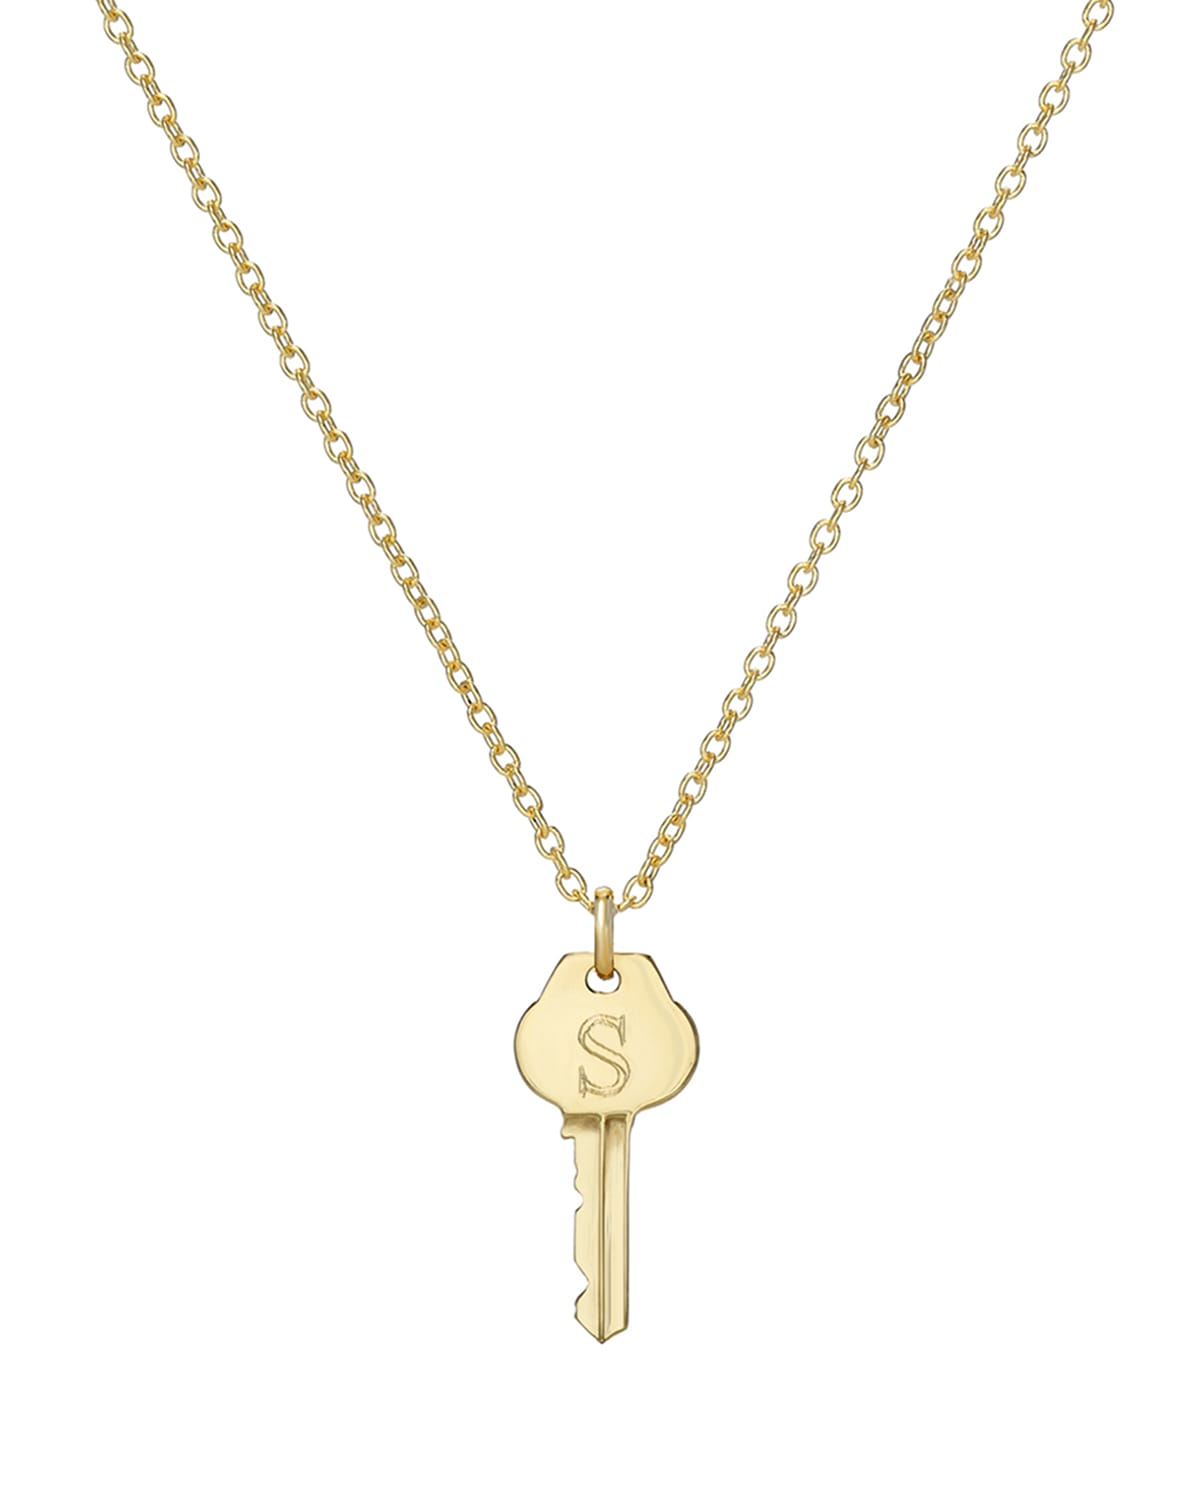 Zoe Lev Jewelry 14k Gold Key Initial Necklace